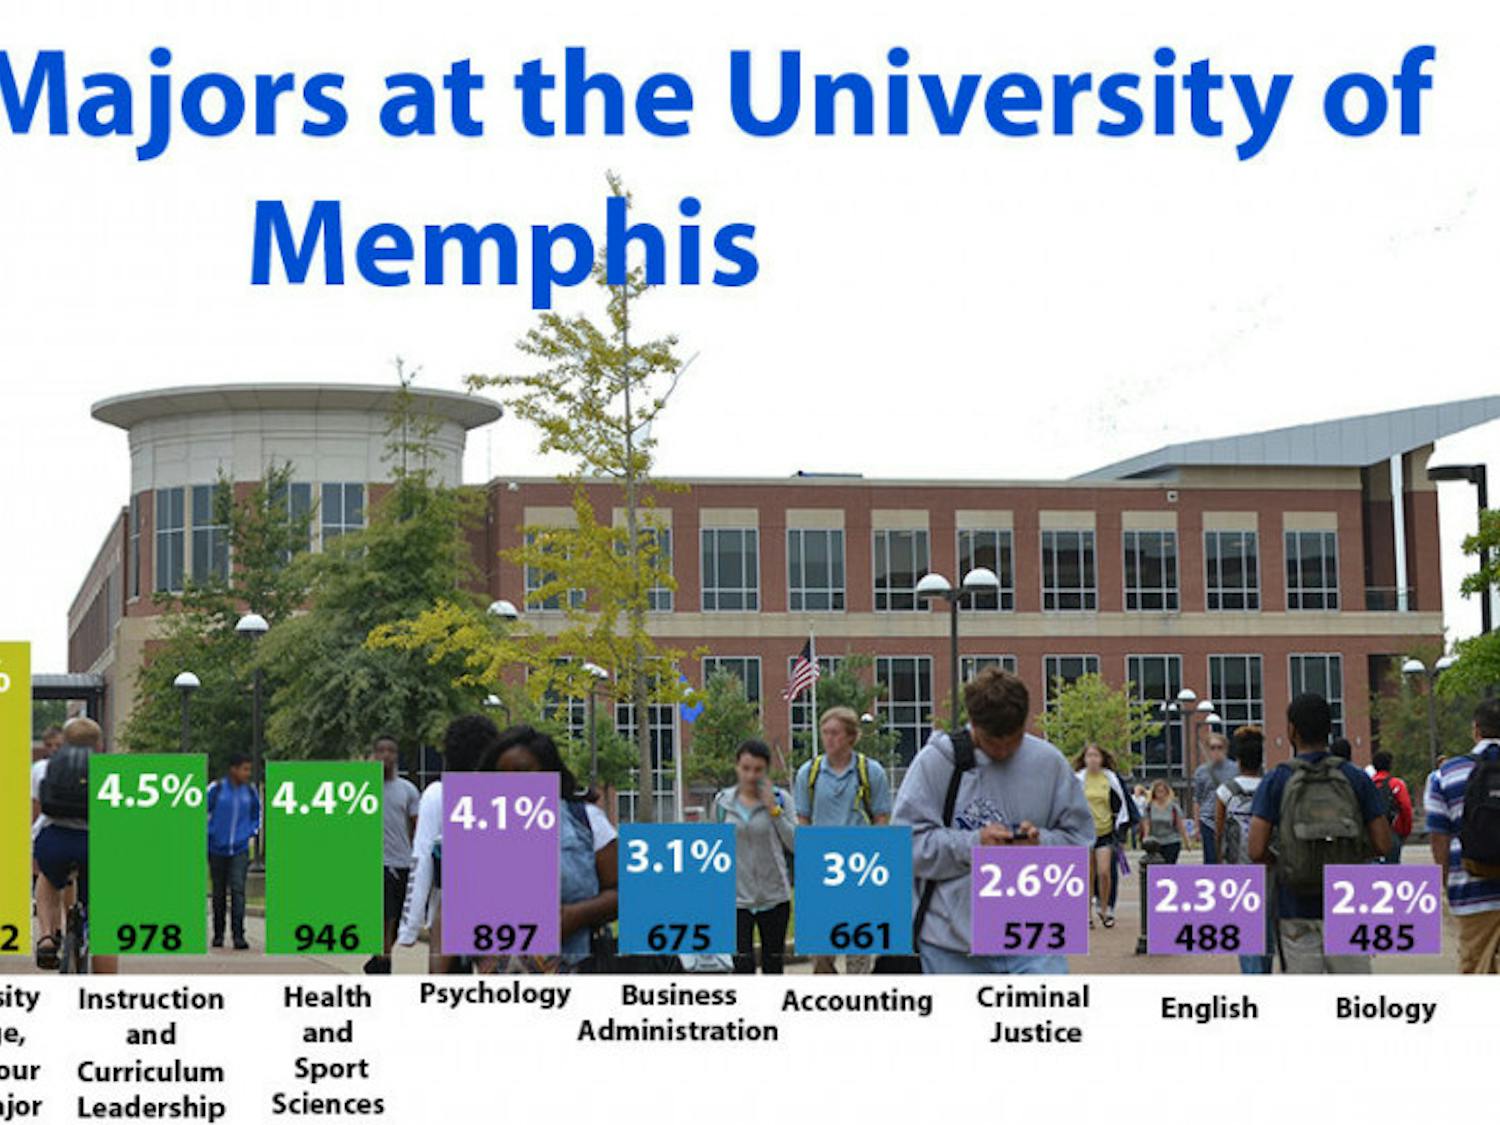 Top 11 Majors at the University of Memphis fall 2015